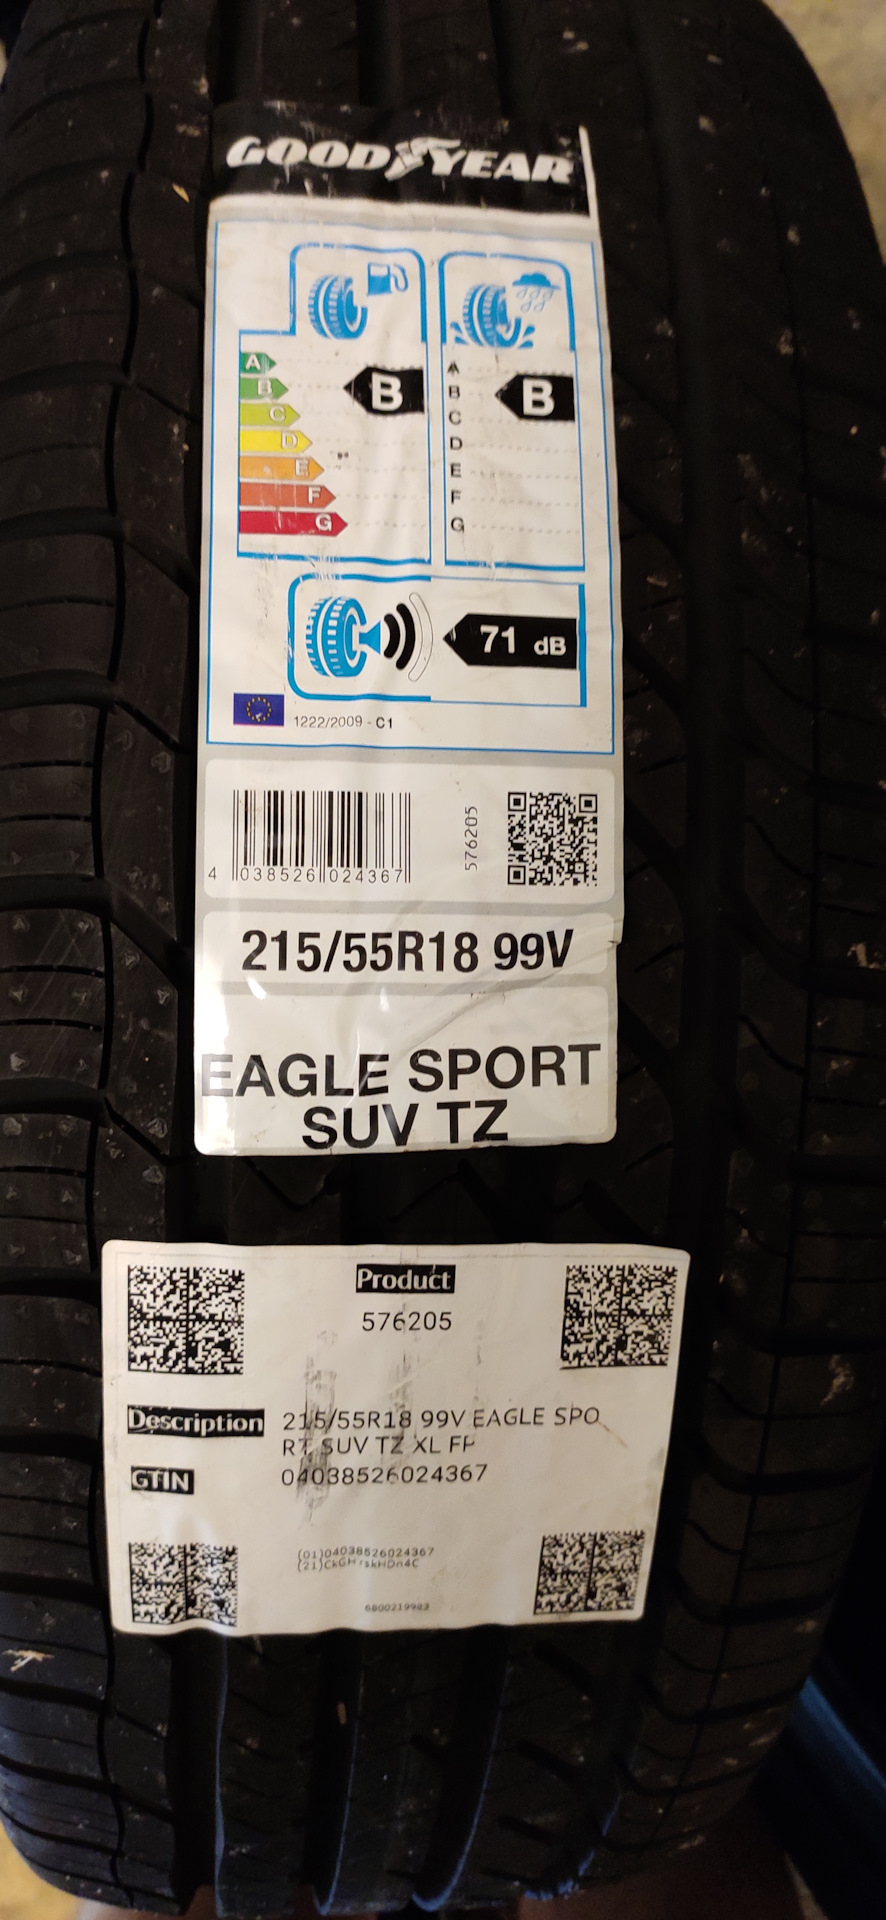 Goodyear eagle sport 215 55. Goodyear Eagle Sport 2 евроэтикетка. Goodyear Eagle Sport SUV TZ. Goodyear Eagle Sport 2 185 65 r15 евроэтикетка. Шины Goodyear Eagle Sport TZ XL 235/45 r18 y 98 евроэтикетка.